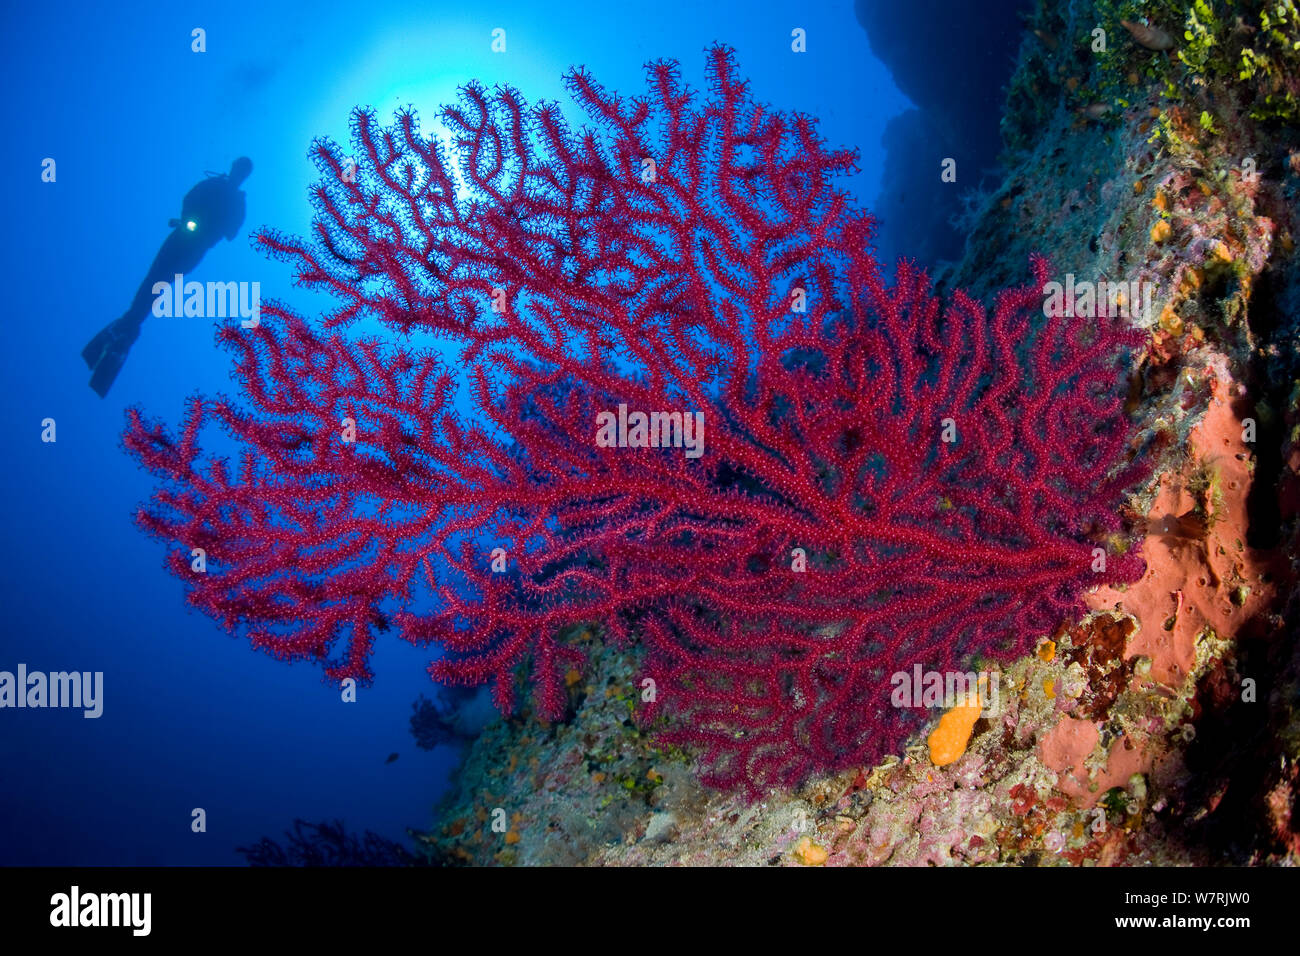 Scuba Diver avec gorgonia rouges (Paramuricea clavata) 'Le Formiche' site de plongée, l'île de Ponza, Italie, Méditerranée, Mer Tyrrhénienne Banque D'Images